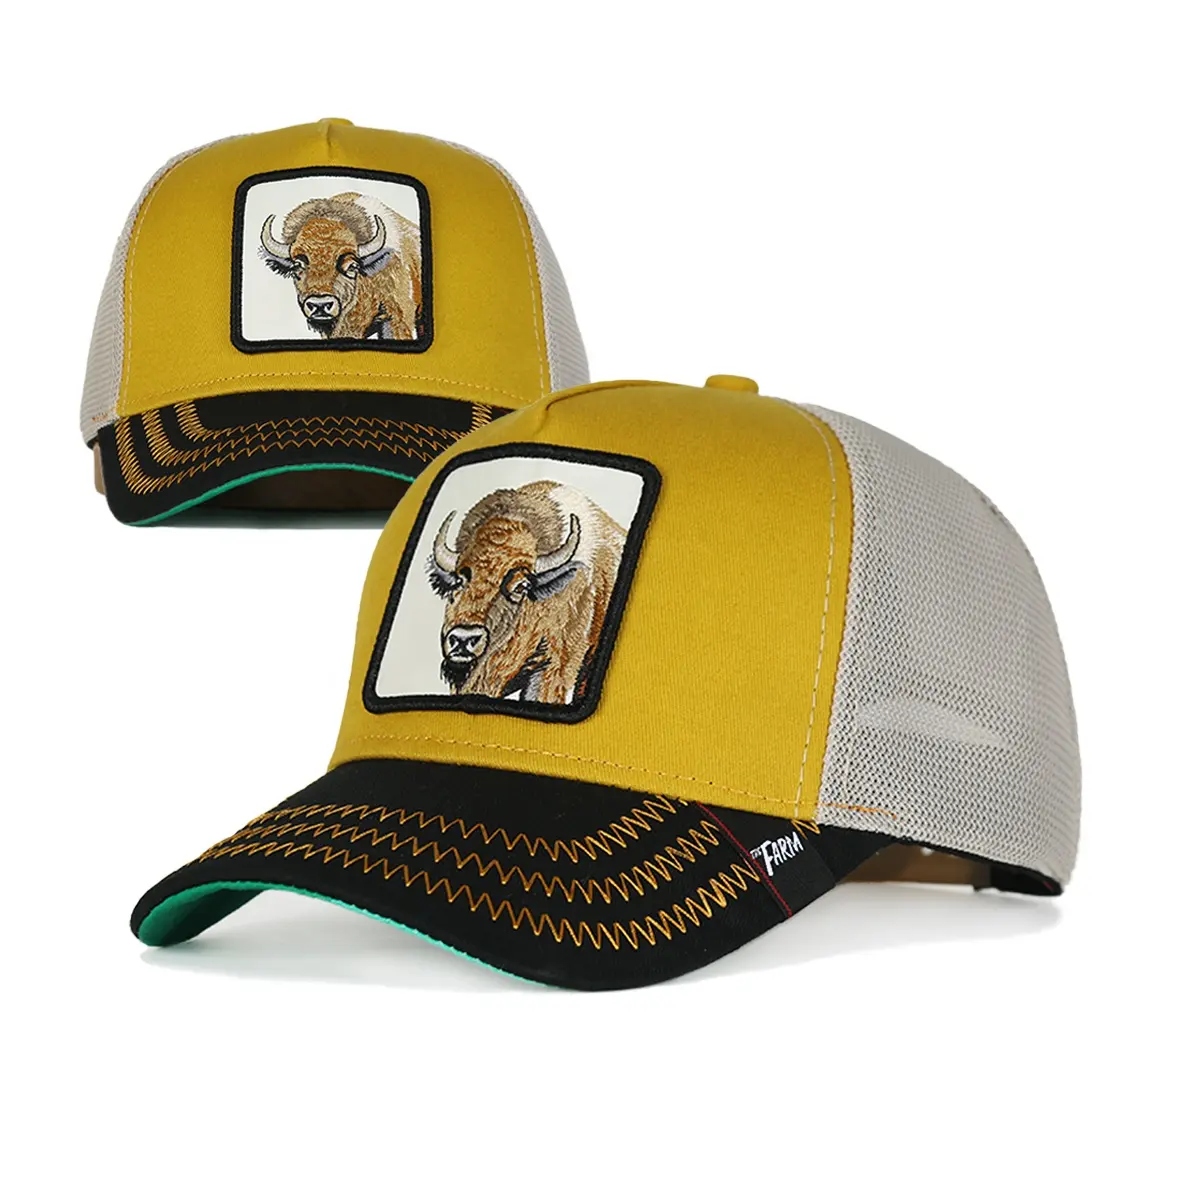 รูปแบบใหม่หมวกขายส่ง 5 แผงฟาร์มหมวกสัตว์หมวกกีฬาผู้ชายตาข่าย Trucker หมวกโลโก้ที่กําหนดเองพรีเมี่ยม Gorras